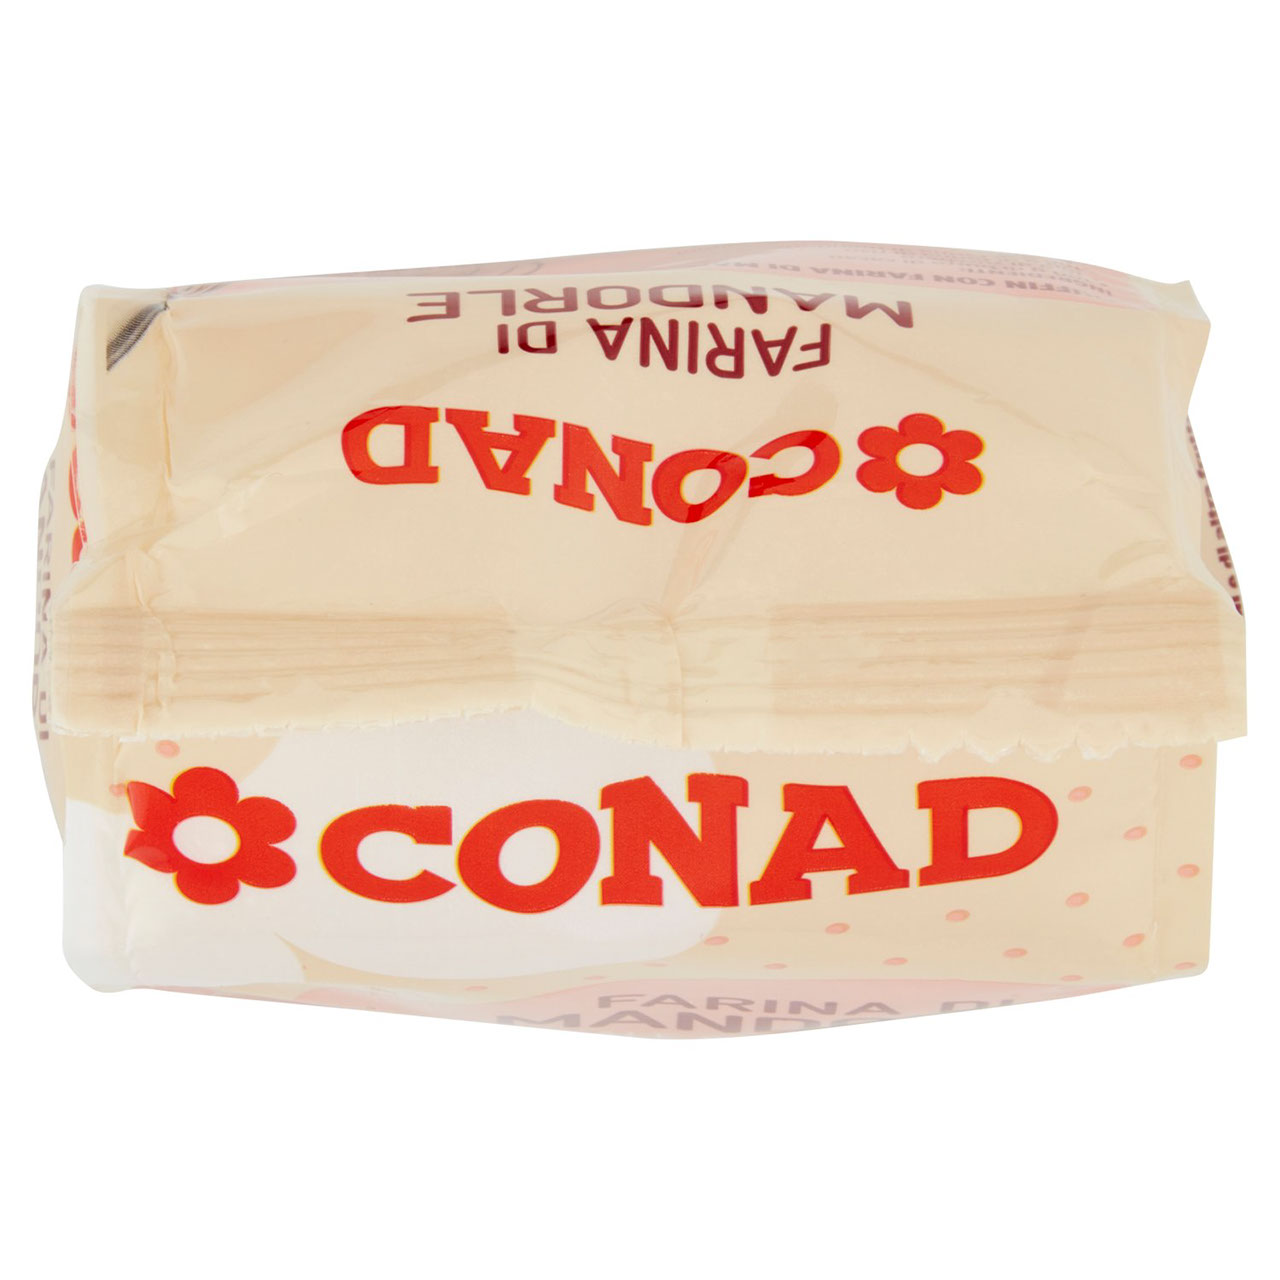 Farina di Mandorle 250g Conad in vendita online